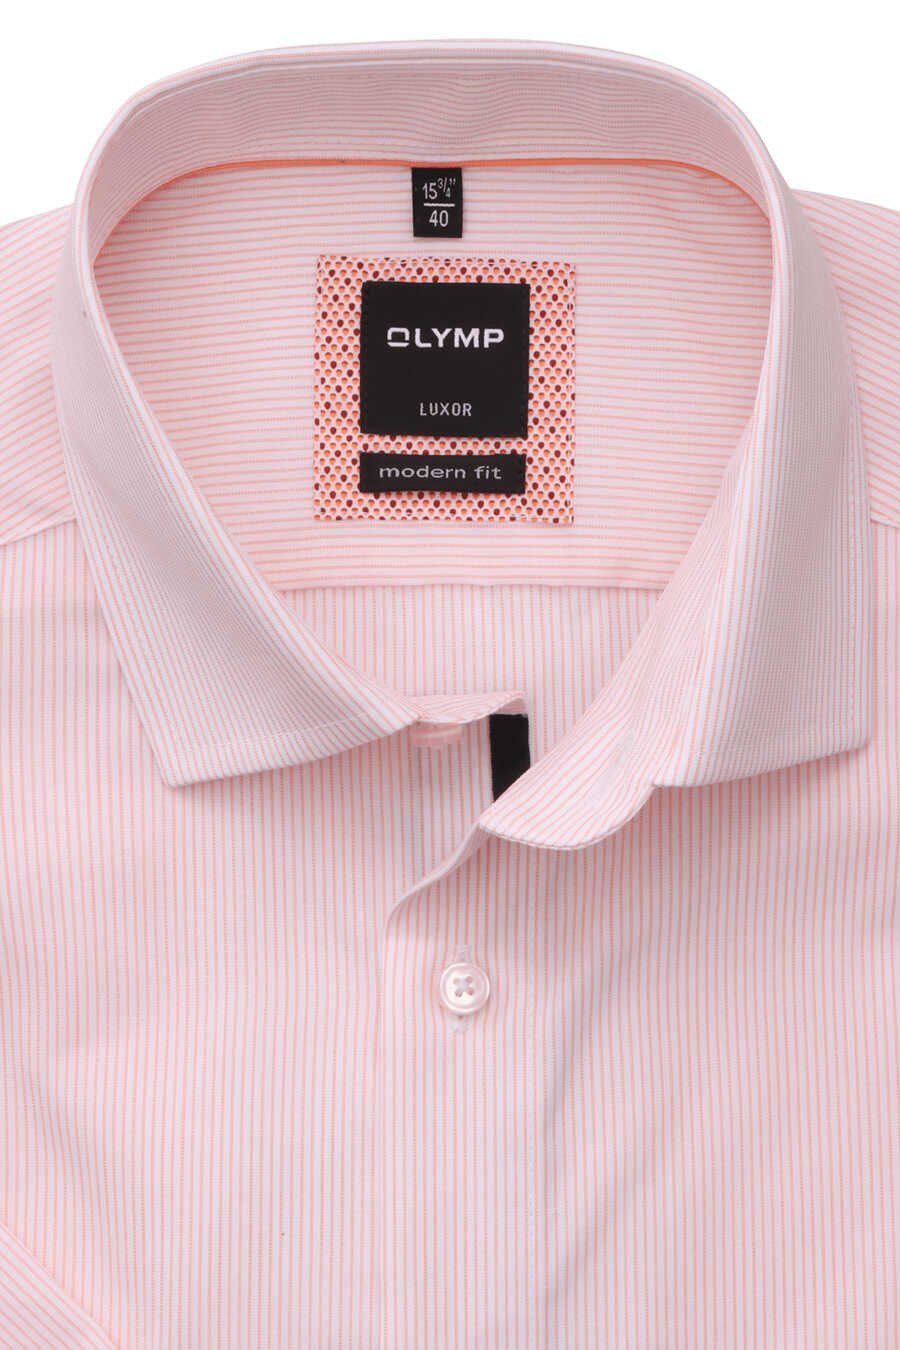 Herren Hemden OLYMP Businesshemd OLYMP Luxor modern fit